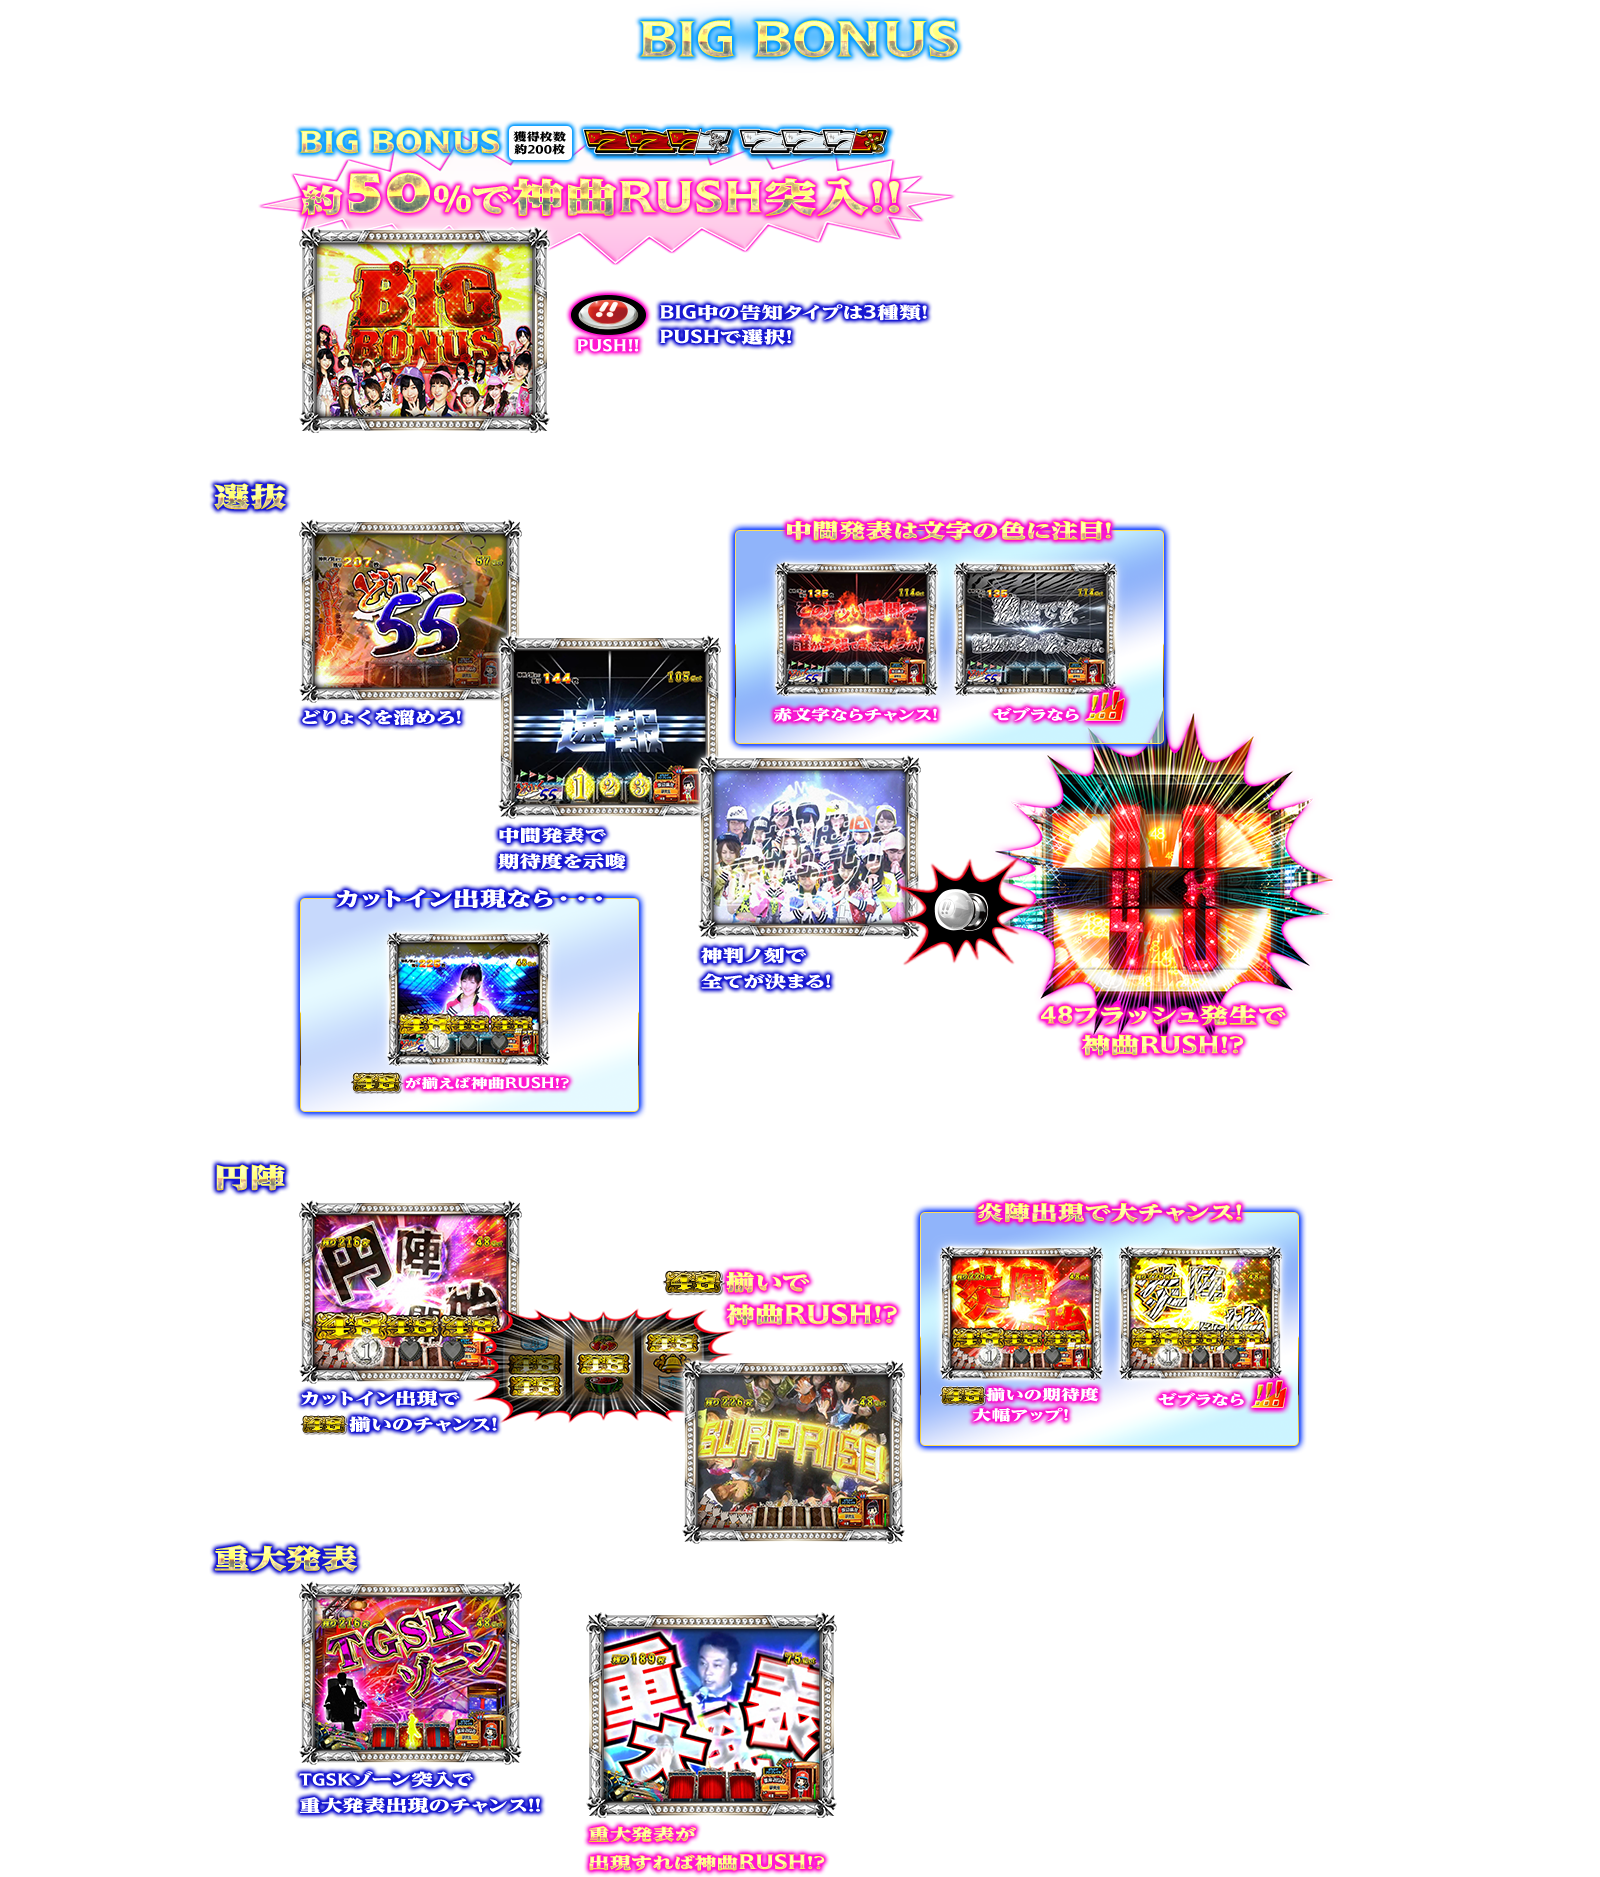 ぱちスロAKB48 バラの儀式の演出紹介。通常時のBONUSのBIG BONUSです。AKB48ファン、スロット初心者、ヘビーユーザーまで誰もが楽しめるDDスペックで登場!!